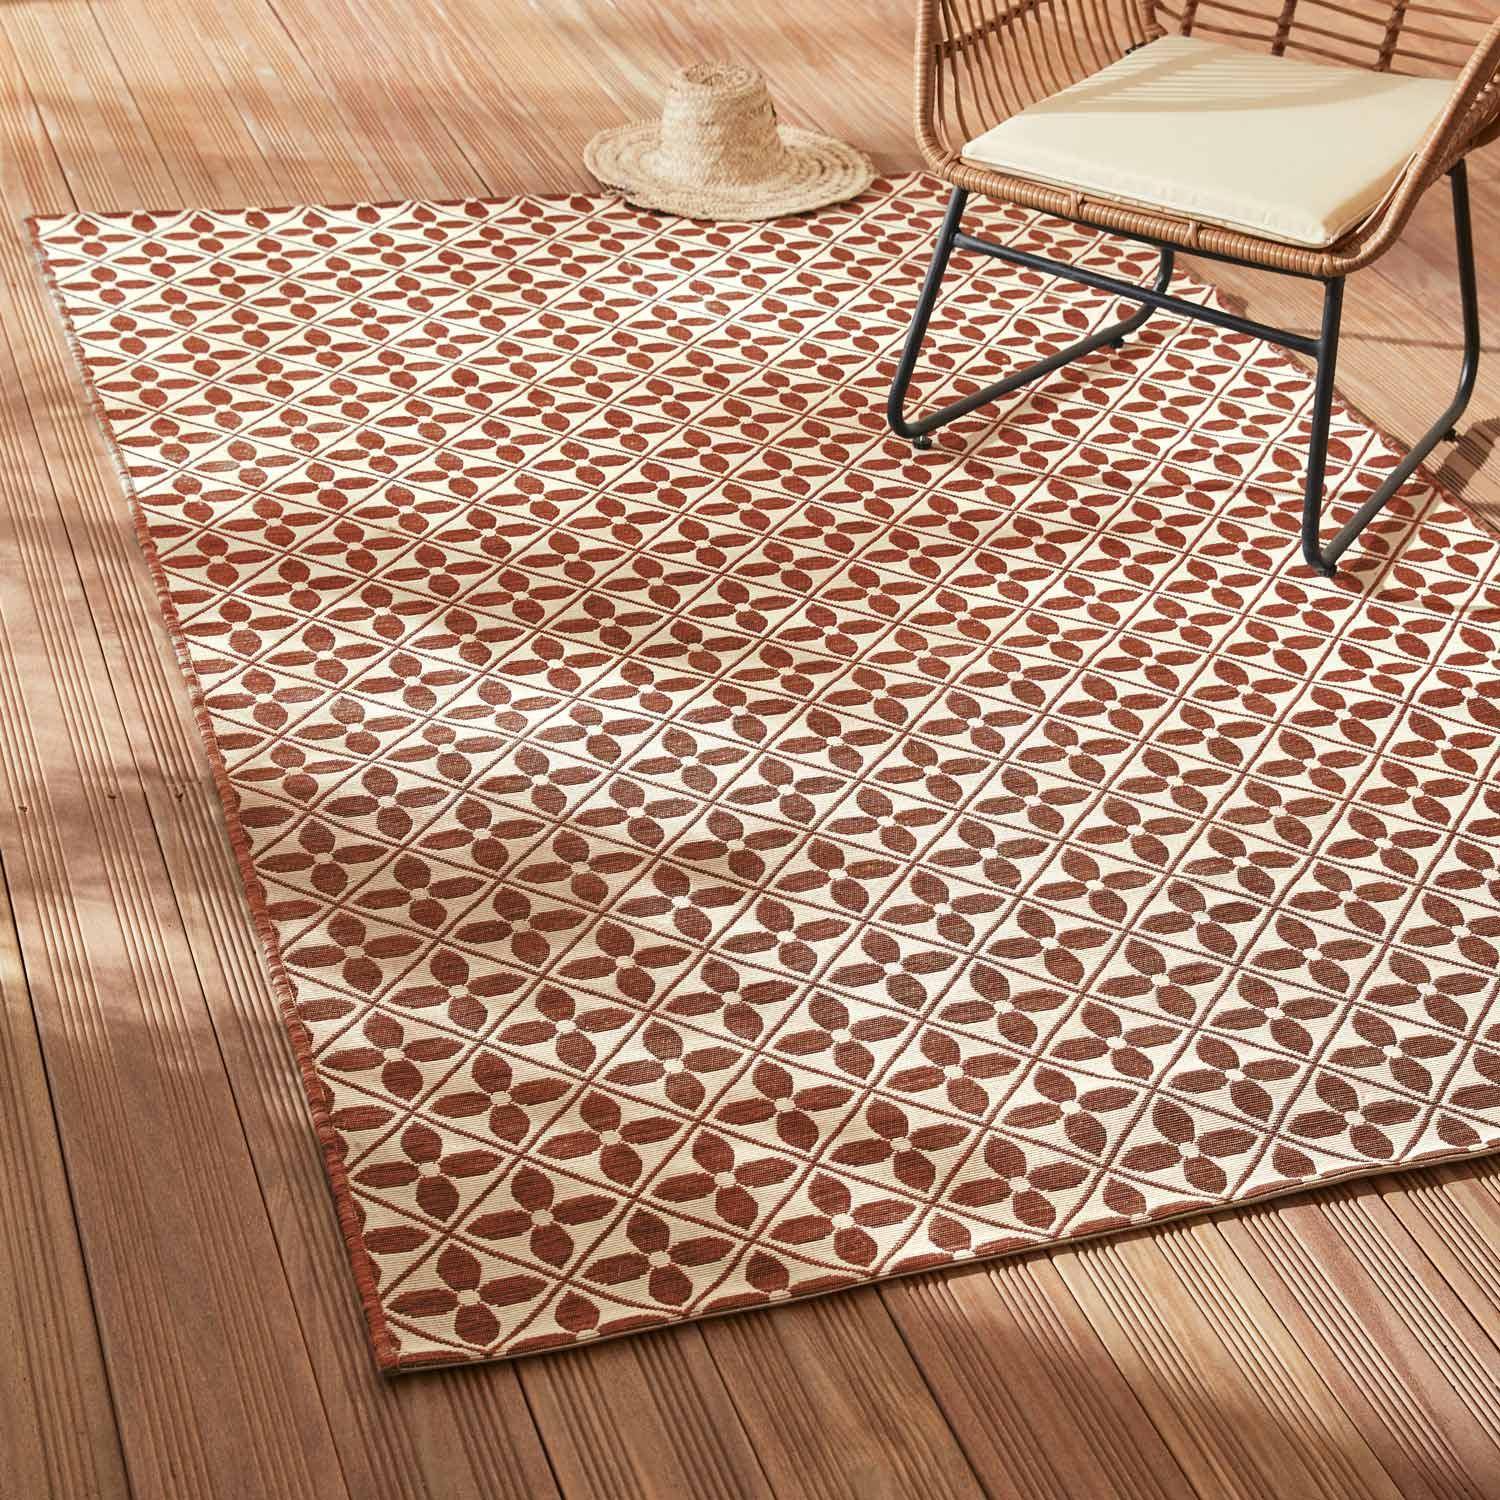 Outdoor rug - 160x230cm - tile print, rectangular, indoor/outdoor use - Terracotta,sweeek,Photo1